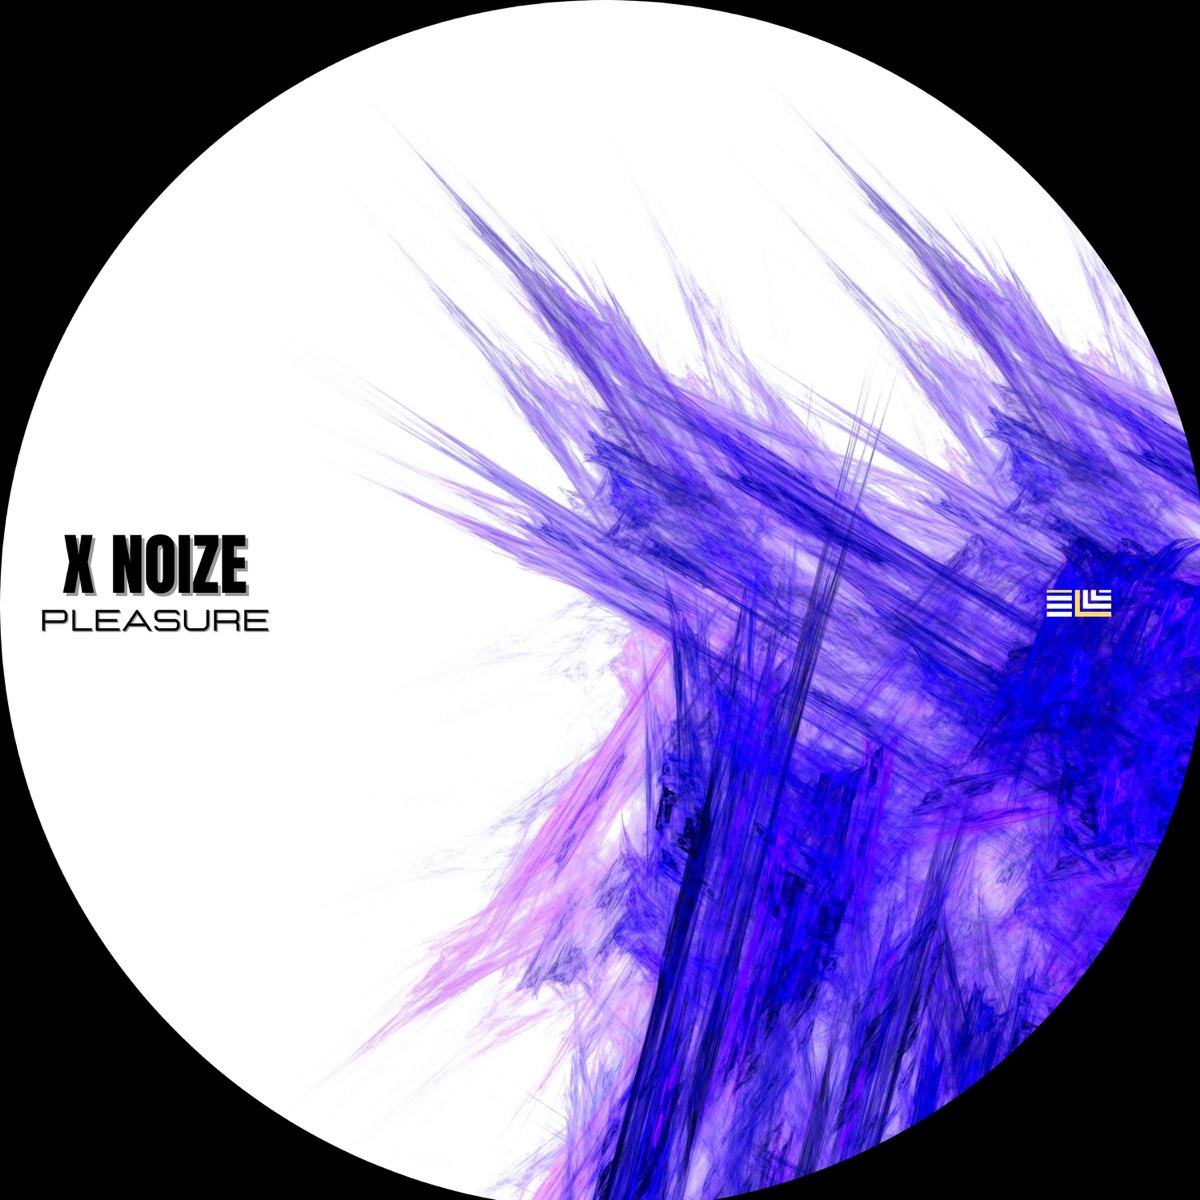 Pleasure песня. XNOIZE картинки. 2018 - Vertical Mode & Space Cat & x-Noize - the Sorcery. Noise x noisette.